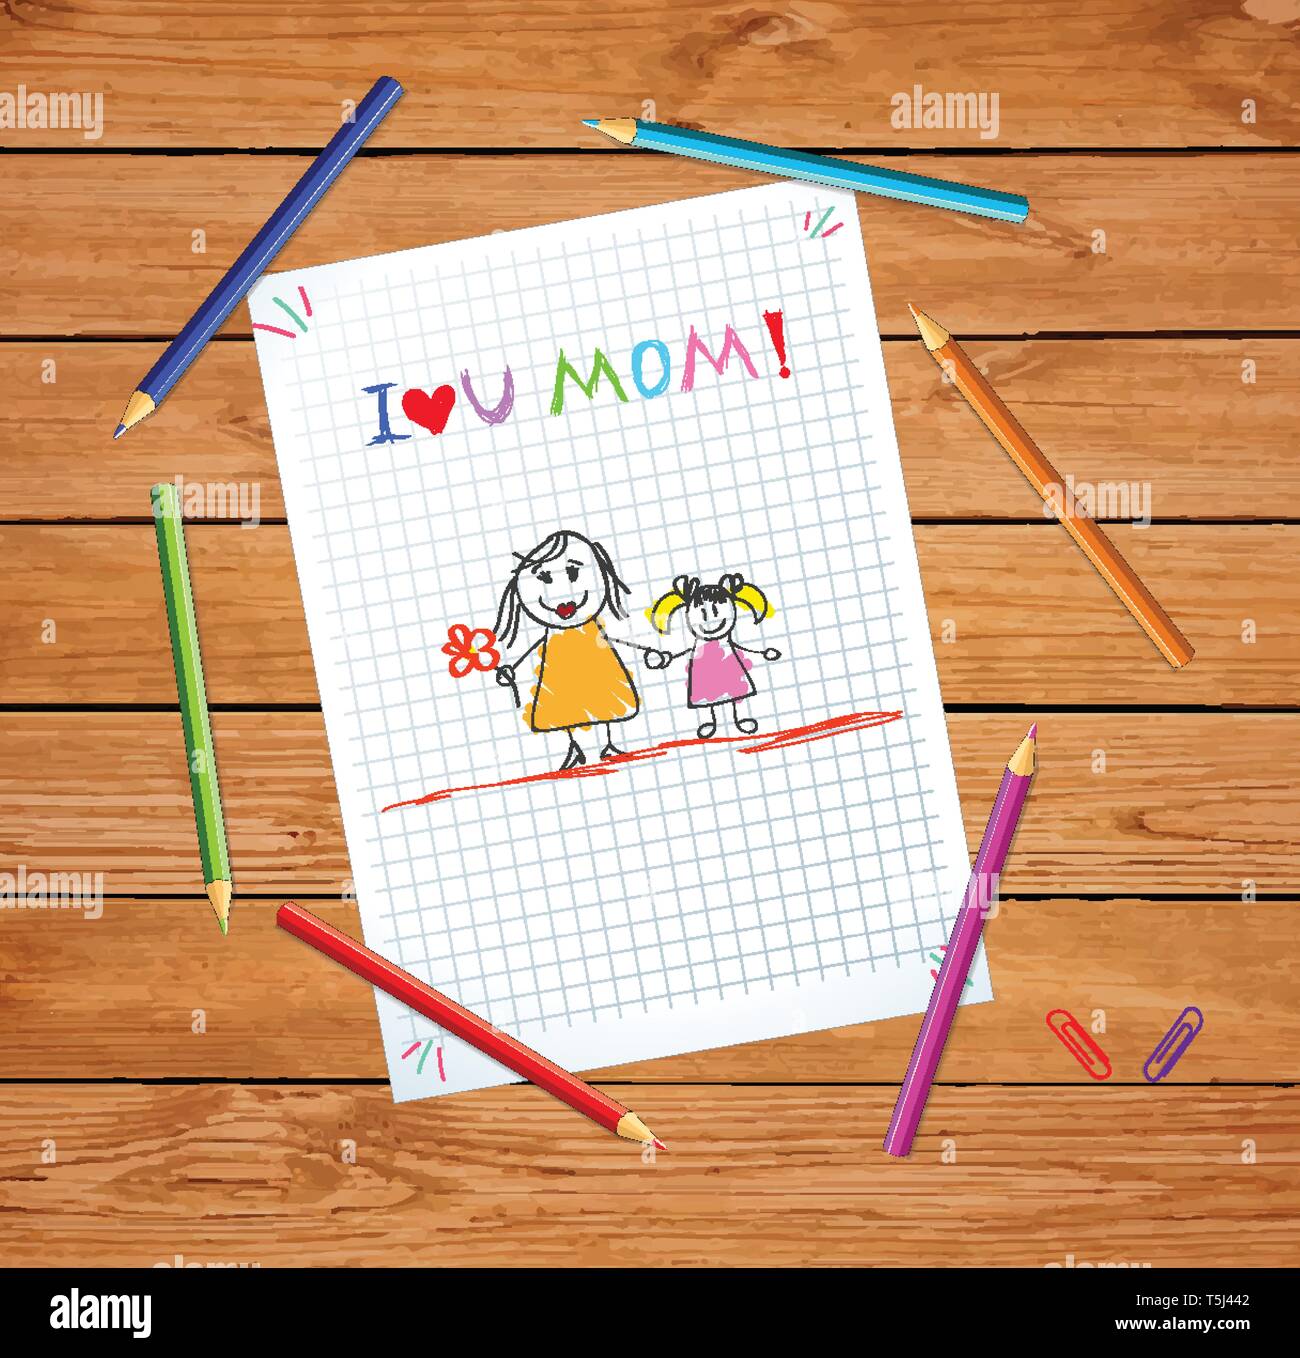 Ich liebe Dich Mama. Kinder bunte Hand gezeichnet Abbildung: Mutter und Tochter auf karierten Notebook Blatt oder graphischen Papier auf Holztisch mit Farbe Stock Vektor